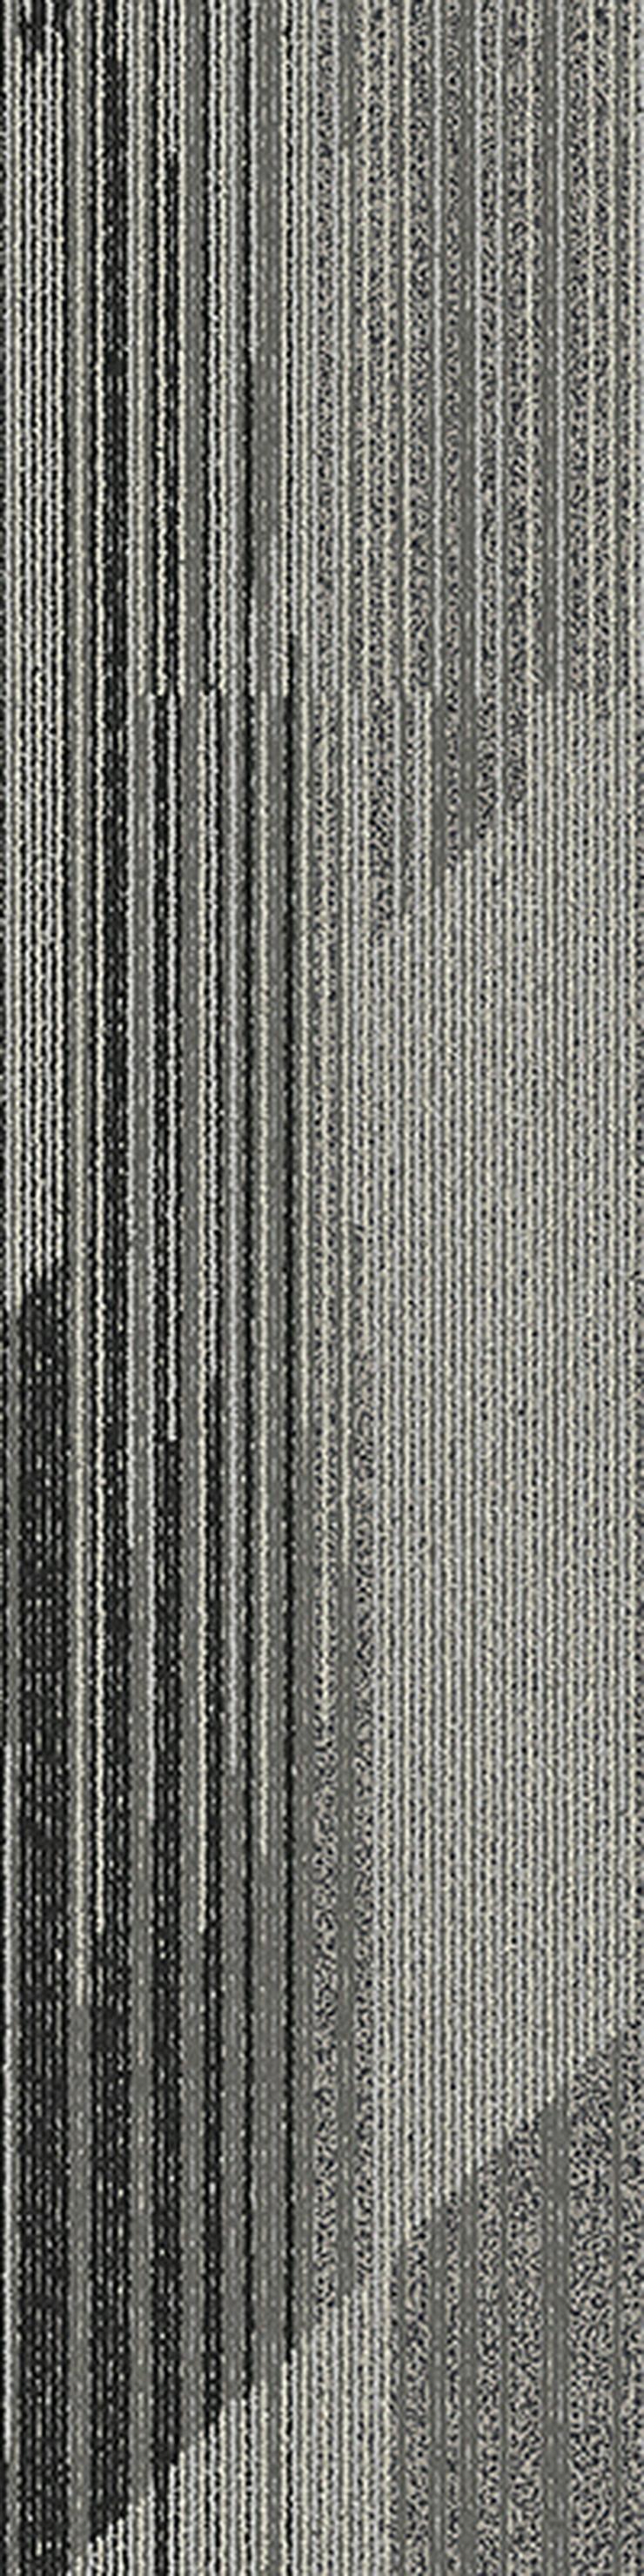 Gestreifte 'Laminat' Teppichfliesen. Bodenbelag in Grau und Braun - Teppiche - Bild 3